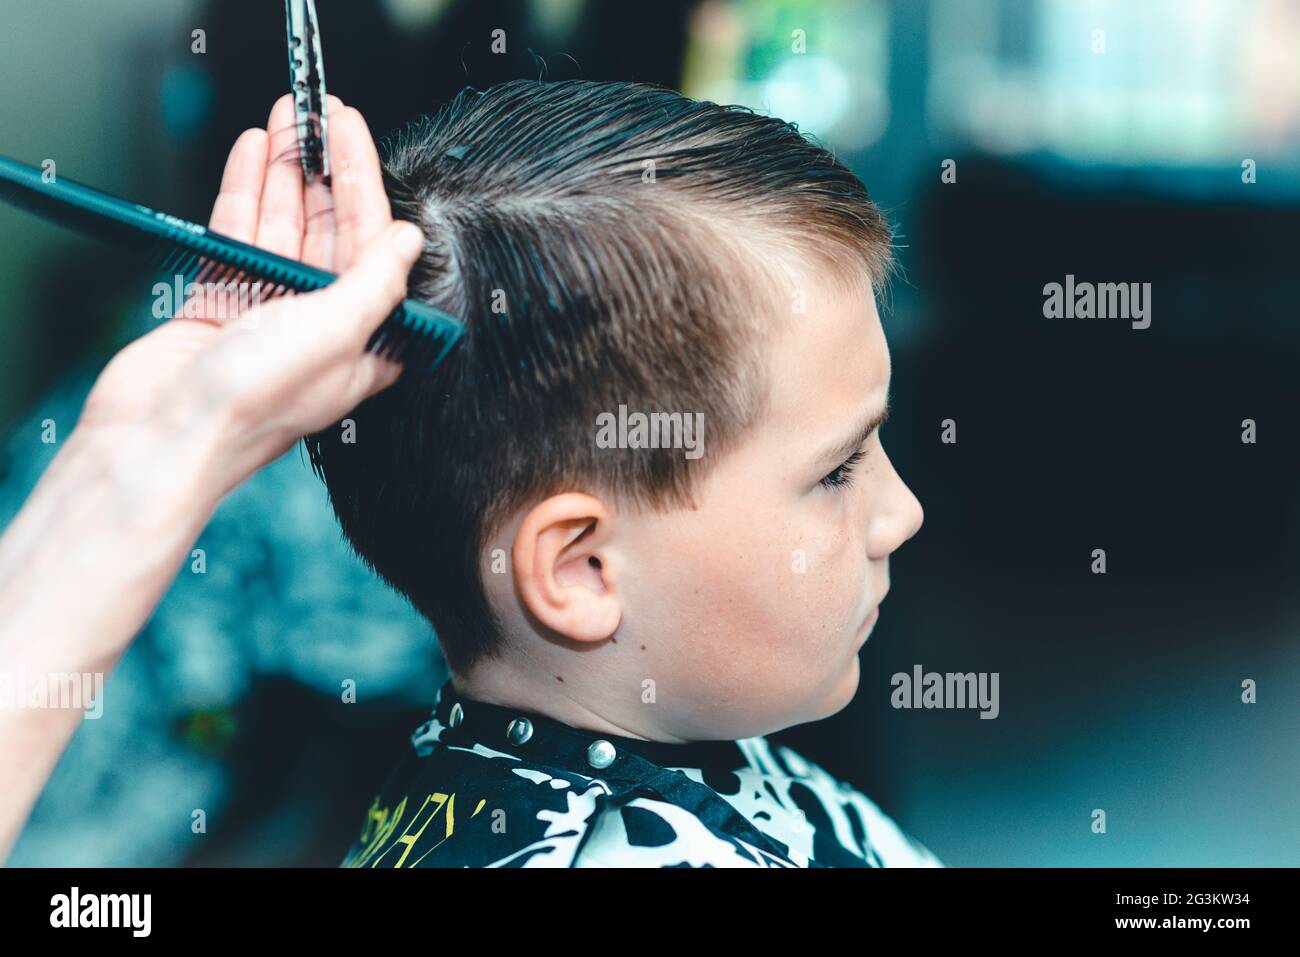 Corte de pelo para un niño pequeño en un salón de belleza. Mano con el  instrumento utilizado para cortar las manos de hair.Peluquería sosteniendo  un peine y un tijera.CL colorido Fotografía de